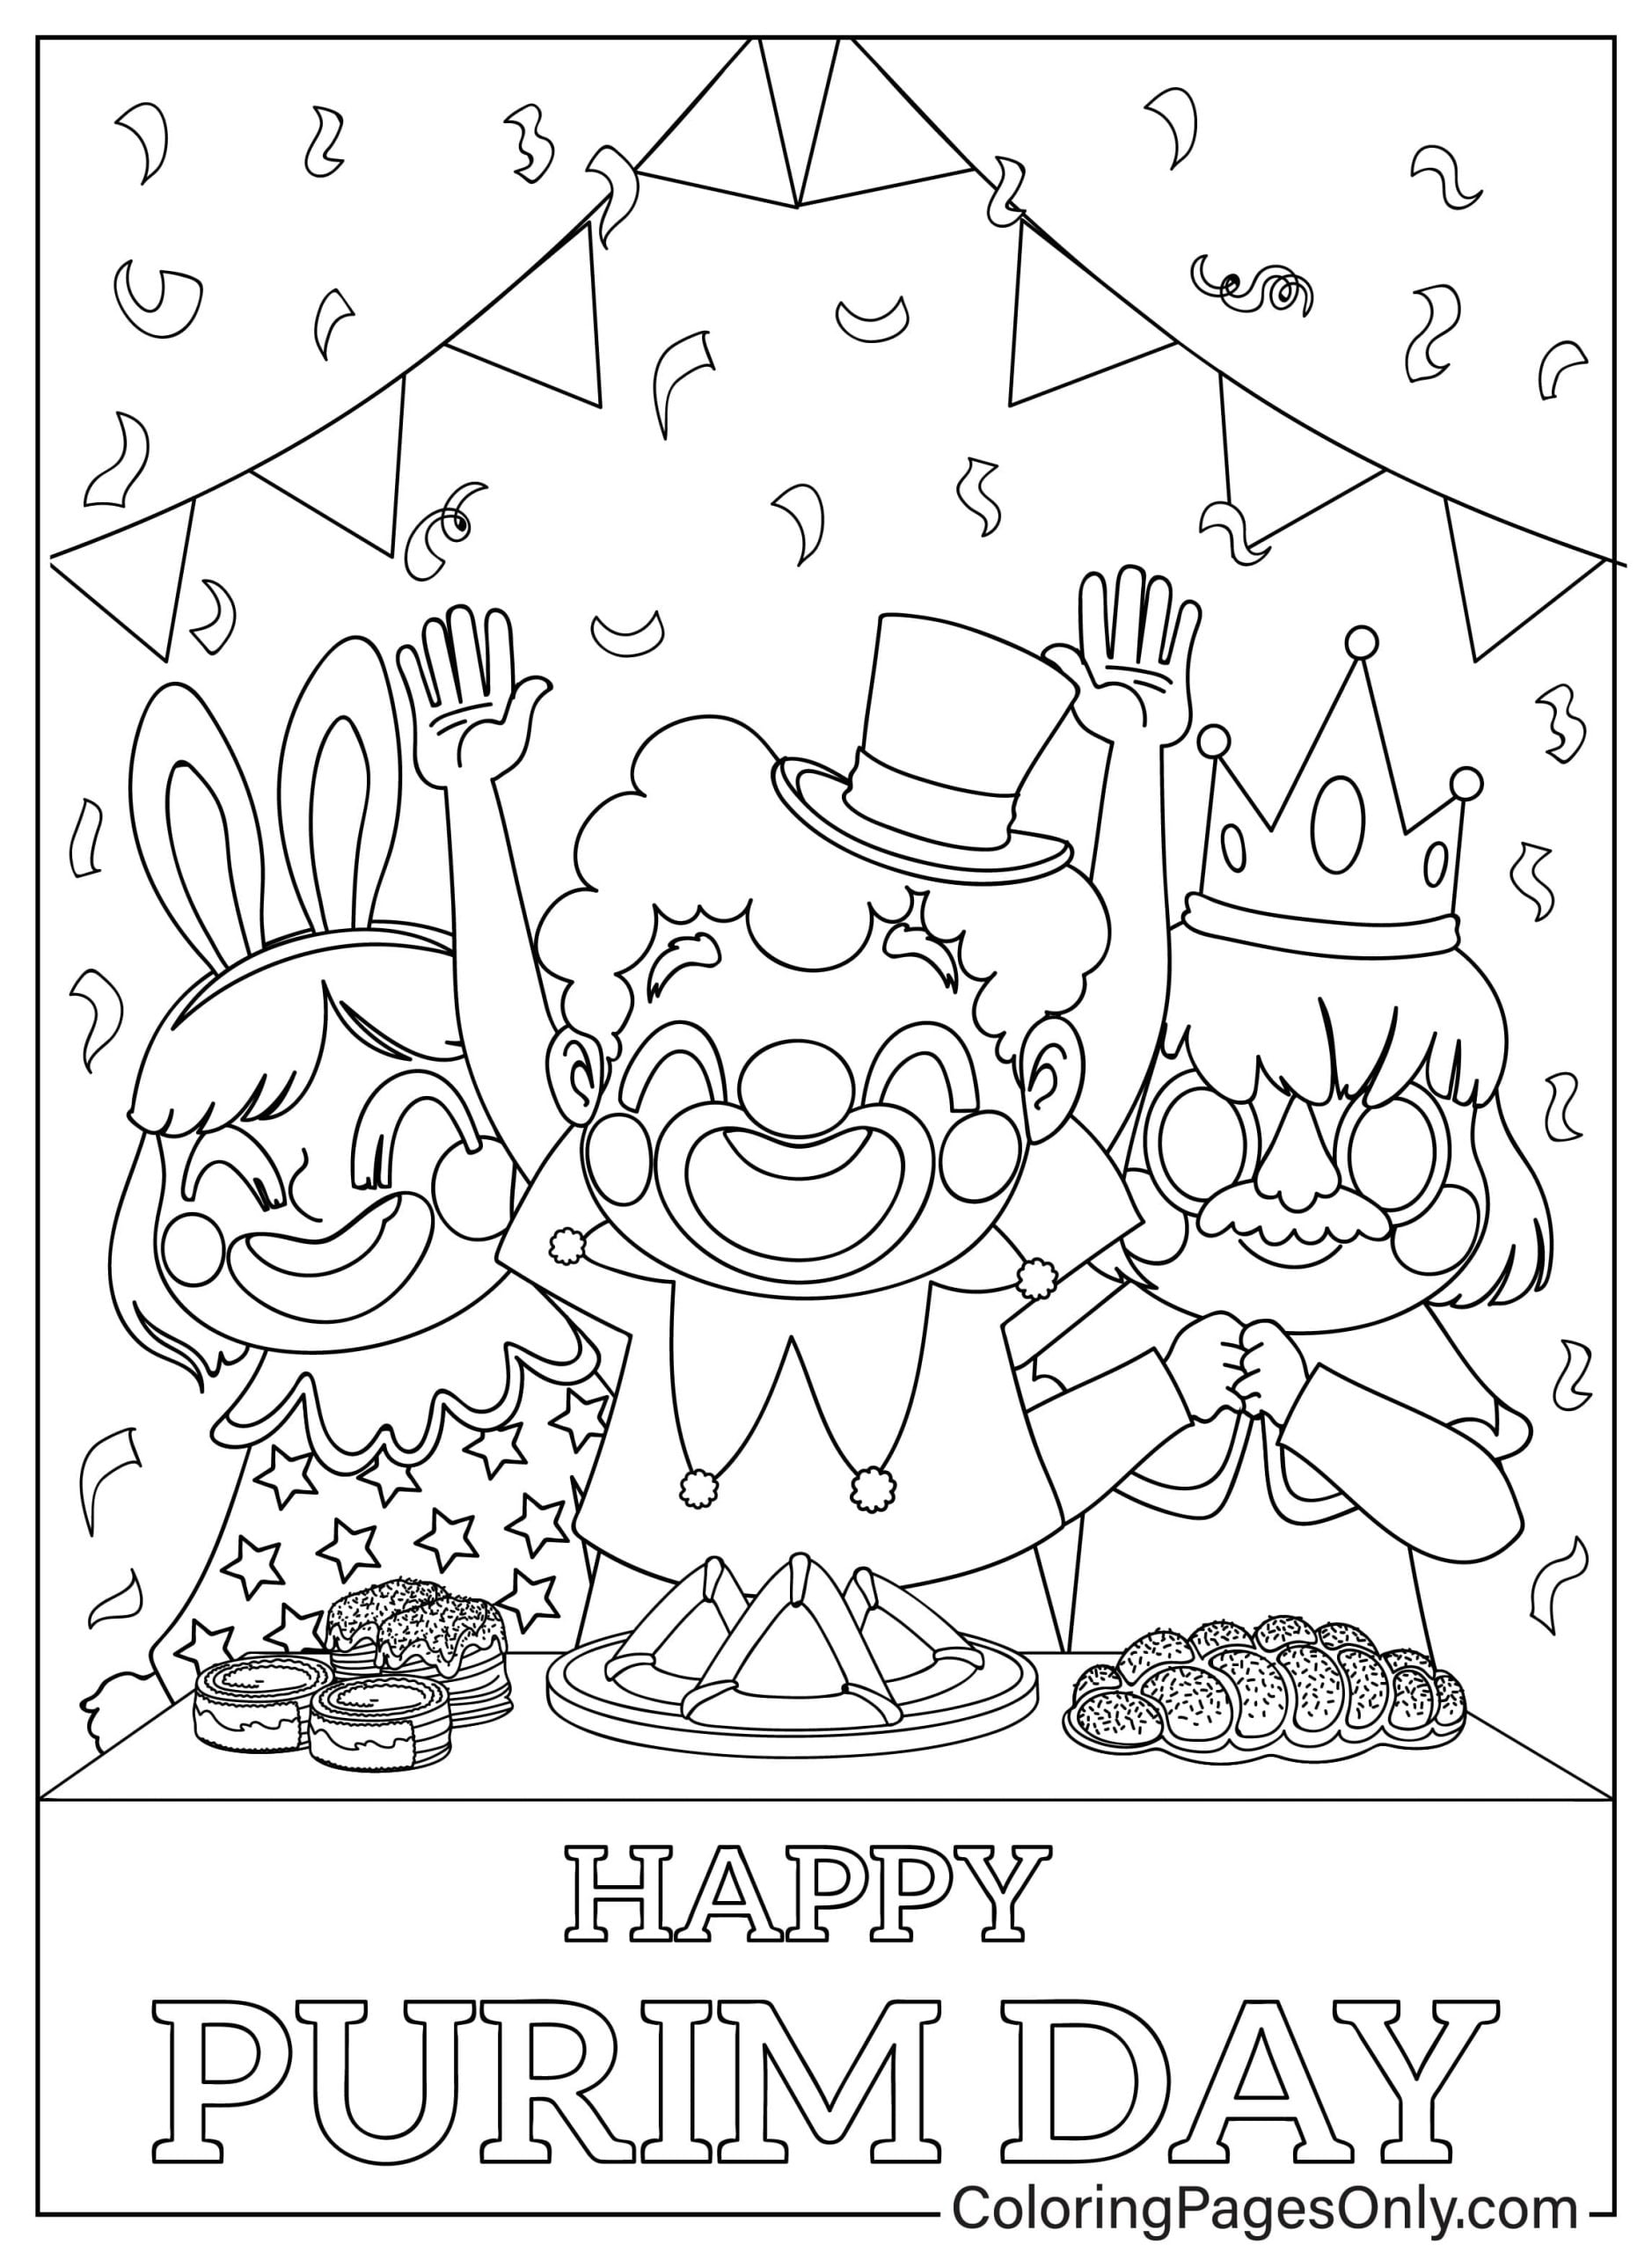 Página para colorear de Childrens for Happy Purim de Purim